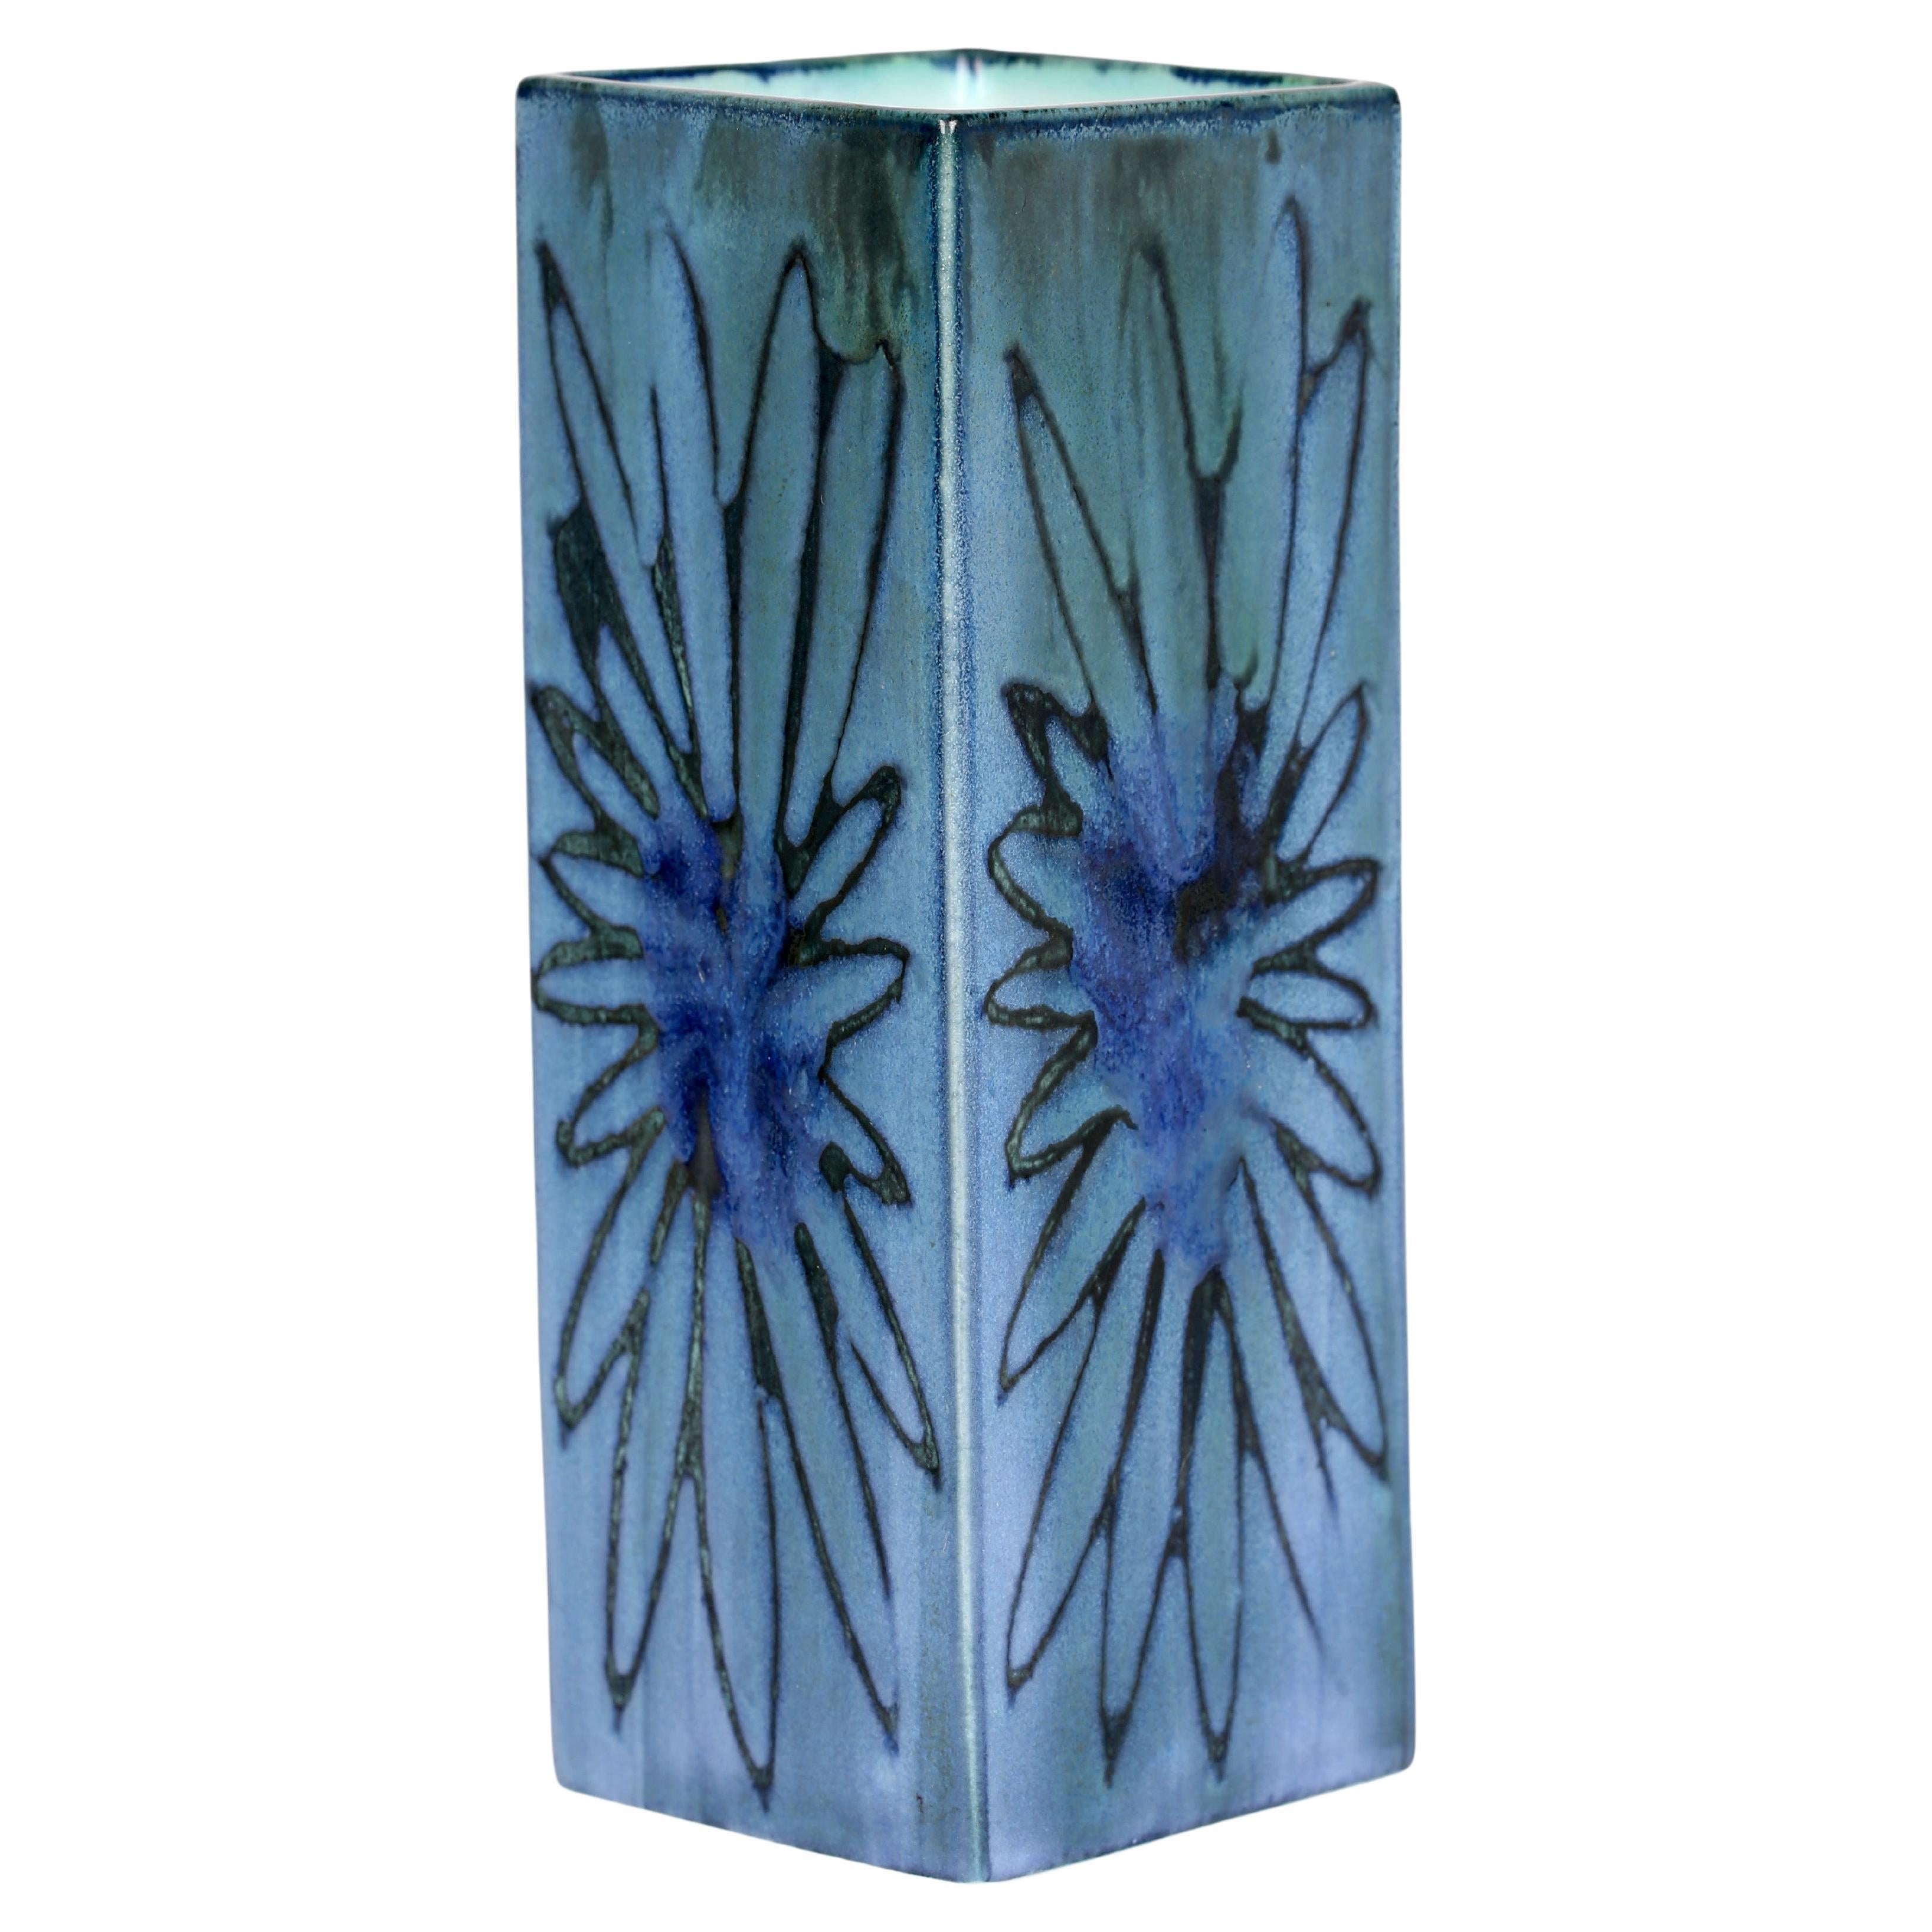 Troika St Ives Studio Pottery Smooth Glazed Floral Design Vase